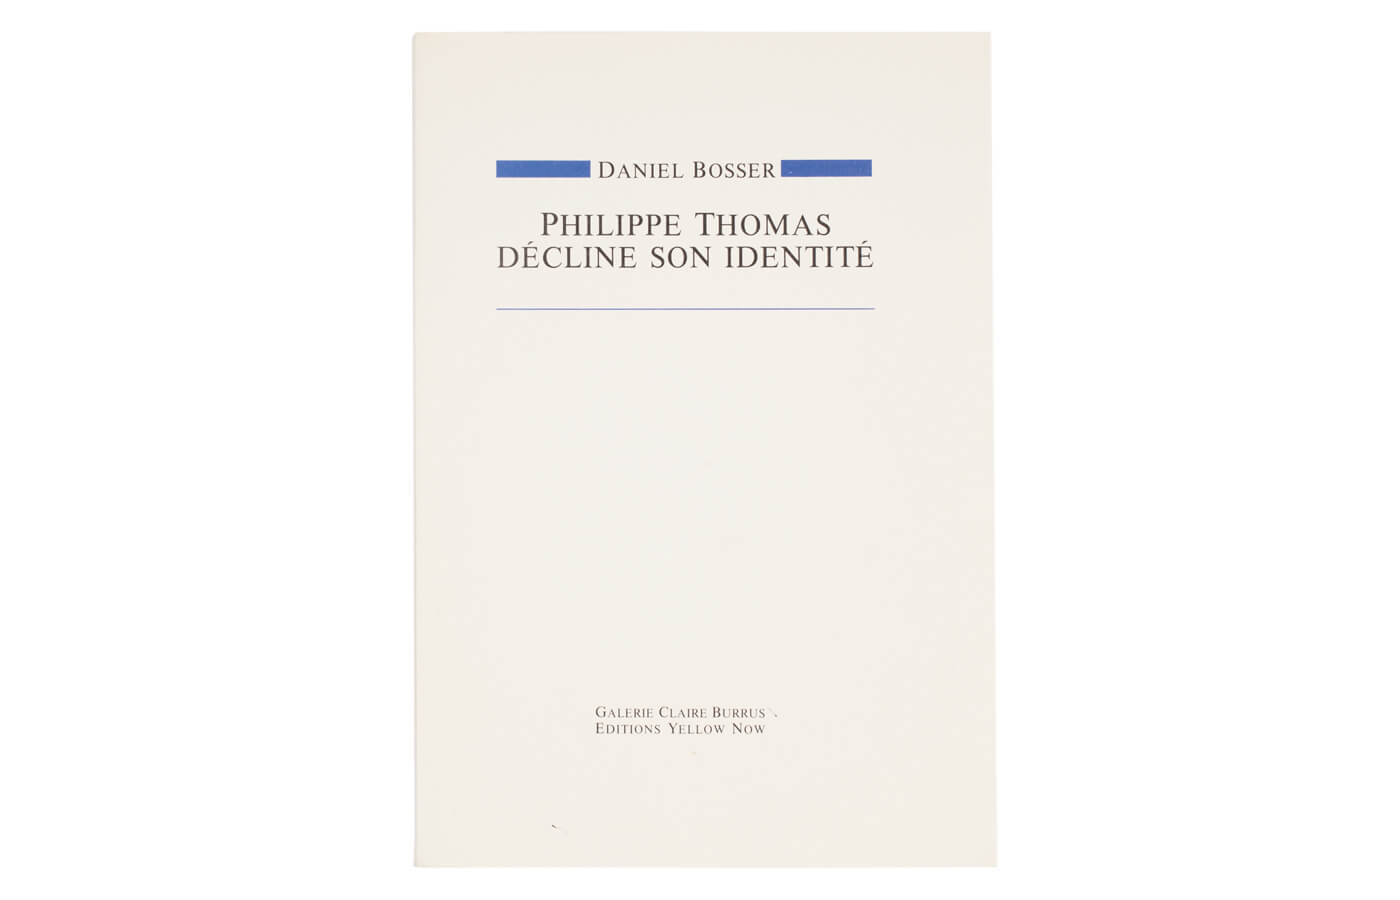 Philippe Thomas décline son identité